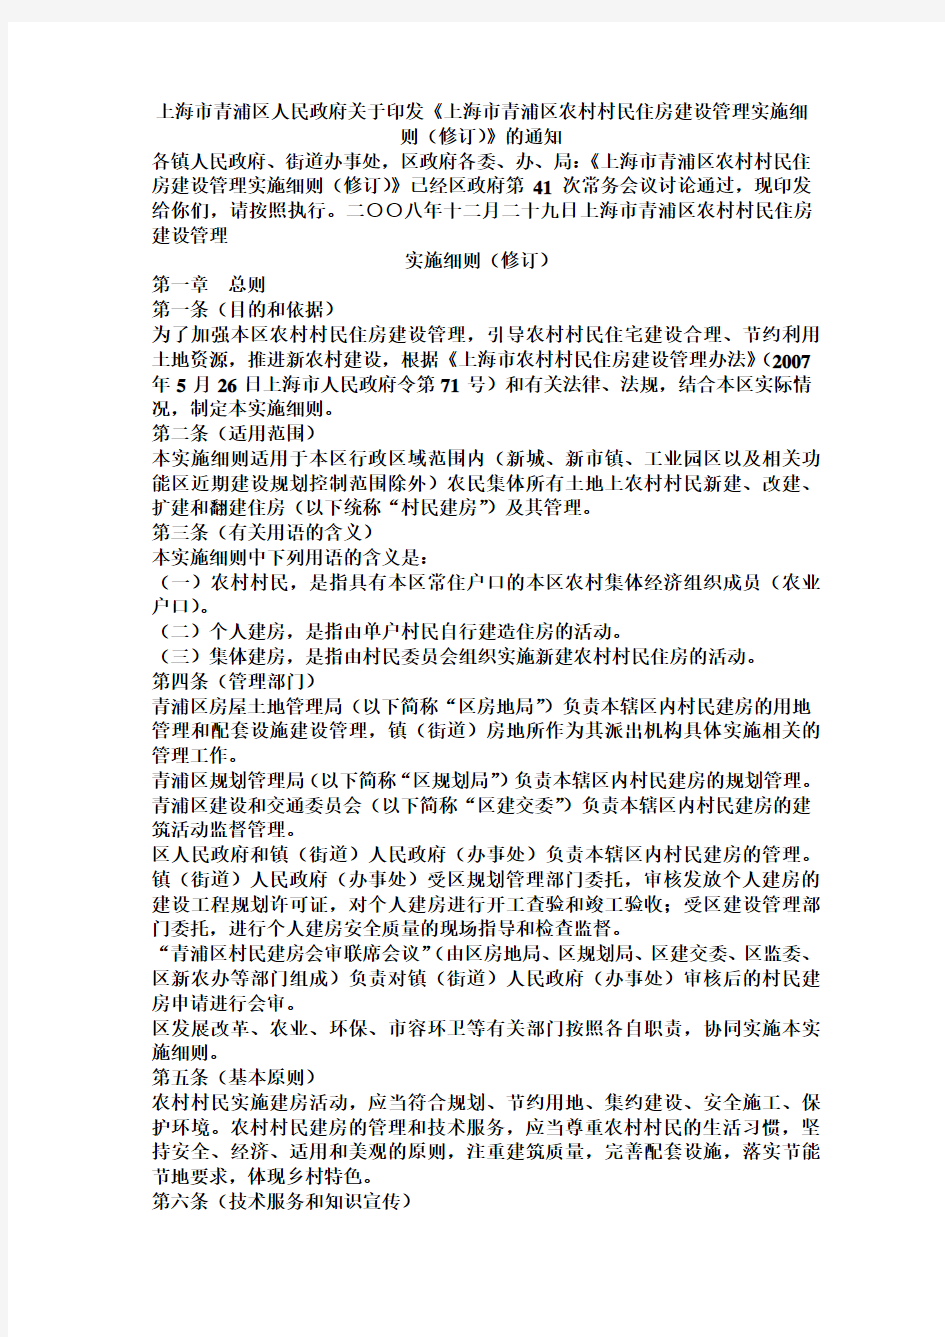 上海市青浦区农村村民住房建设管理实施细则(修订)122号